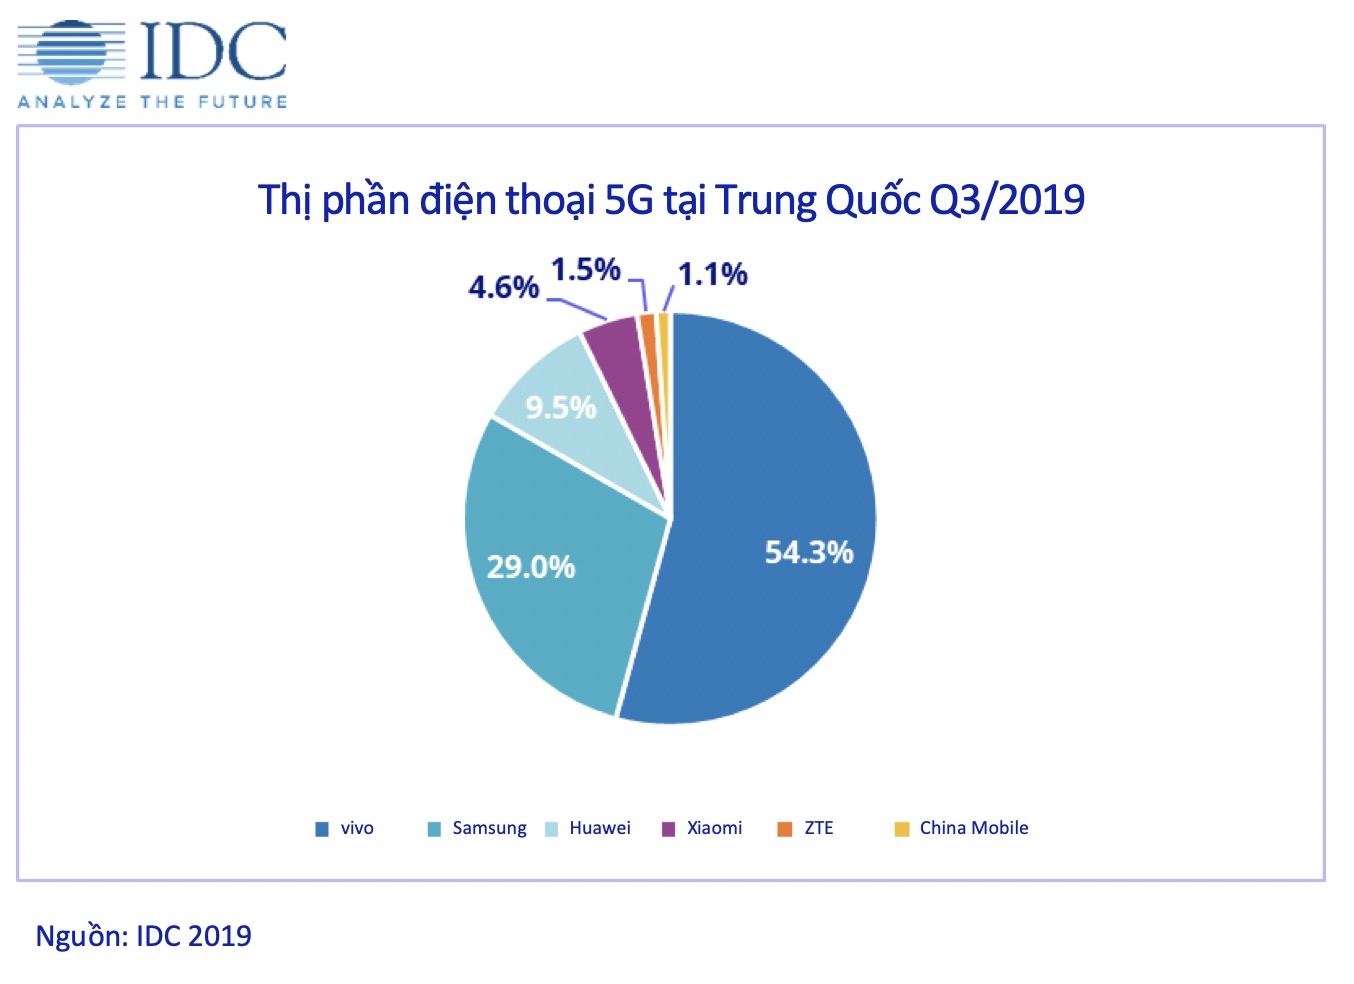 vivo chiếm hơn 50% thị phần điện thoại 5G bán ra trong Quý III tại Trung Quốc